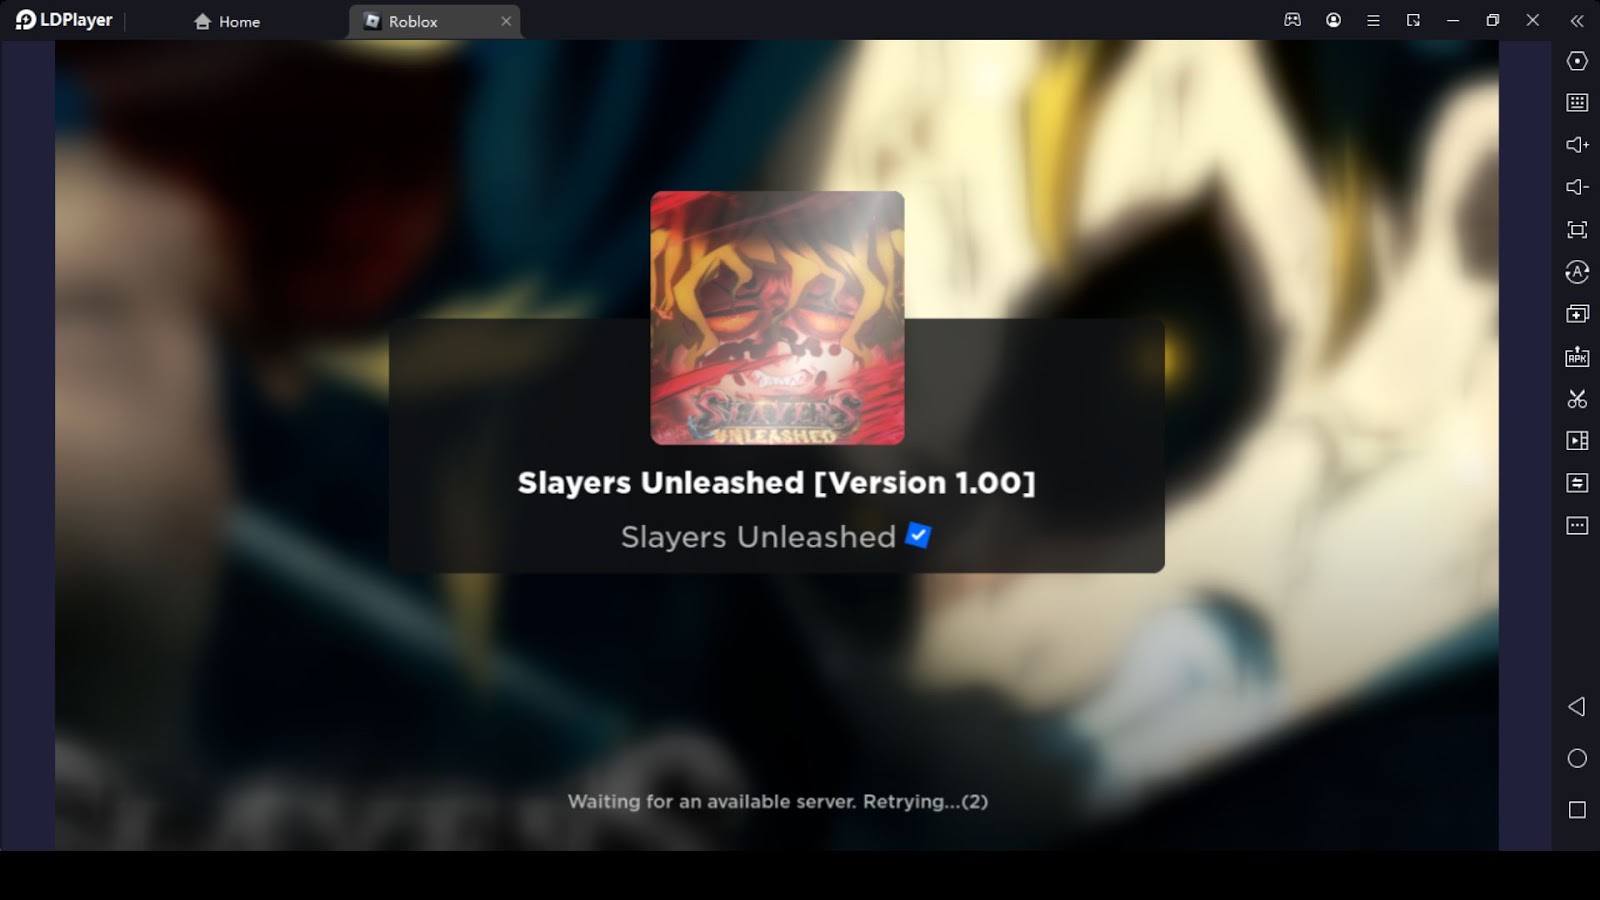 Slayers Unleashed codes